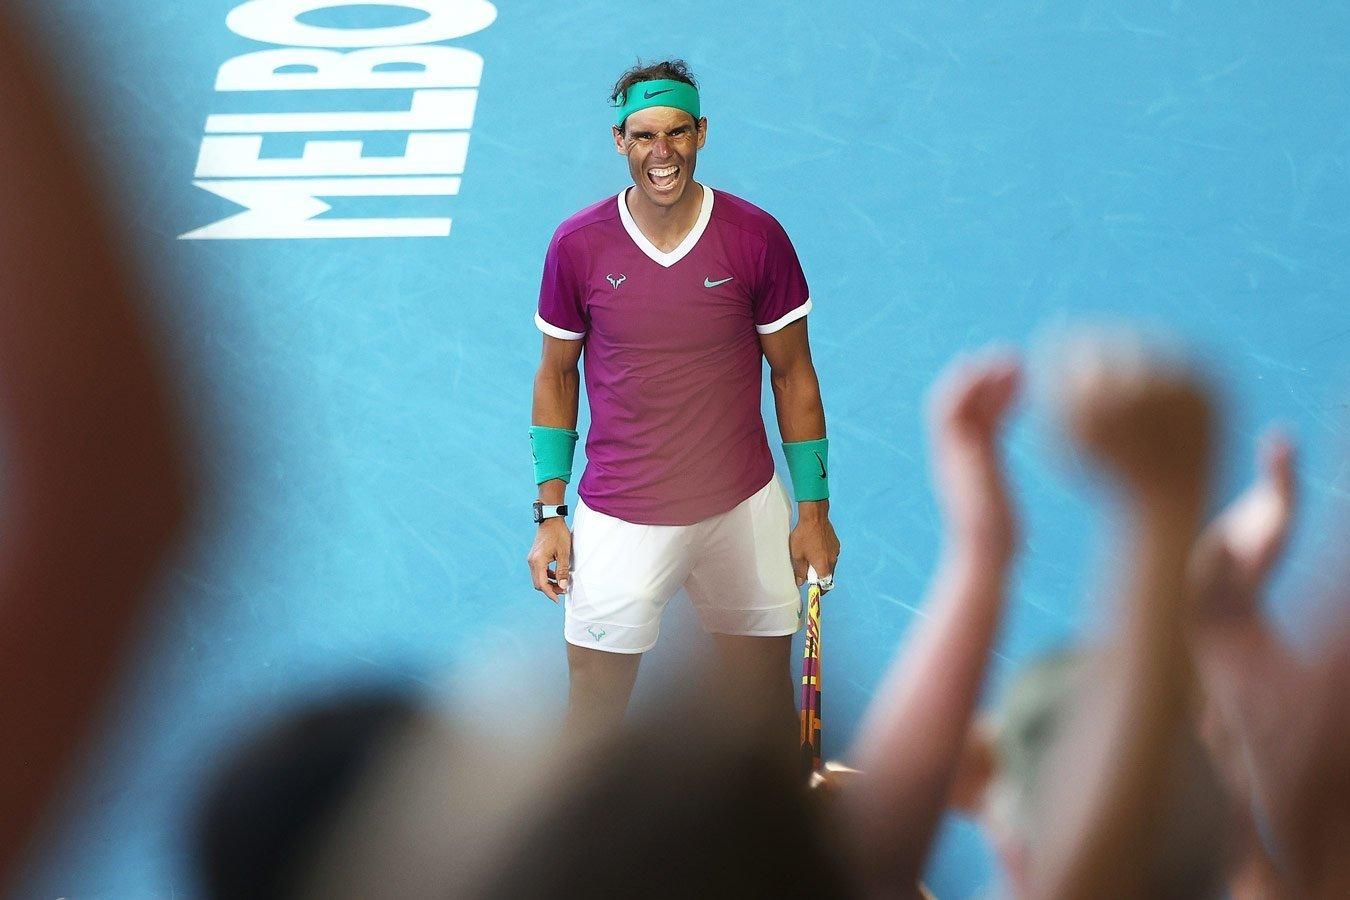 Шестой раз в карьере: Надаль обыграл Берреттини и вышел в финал Australian Open